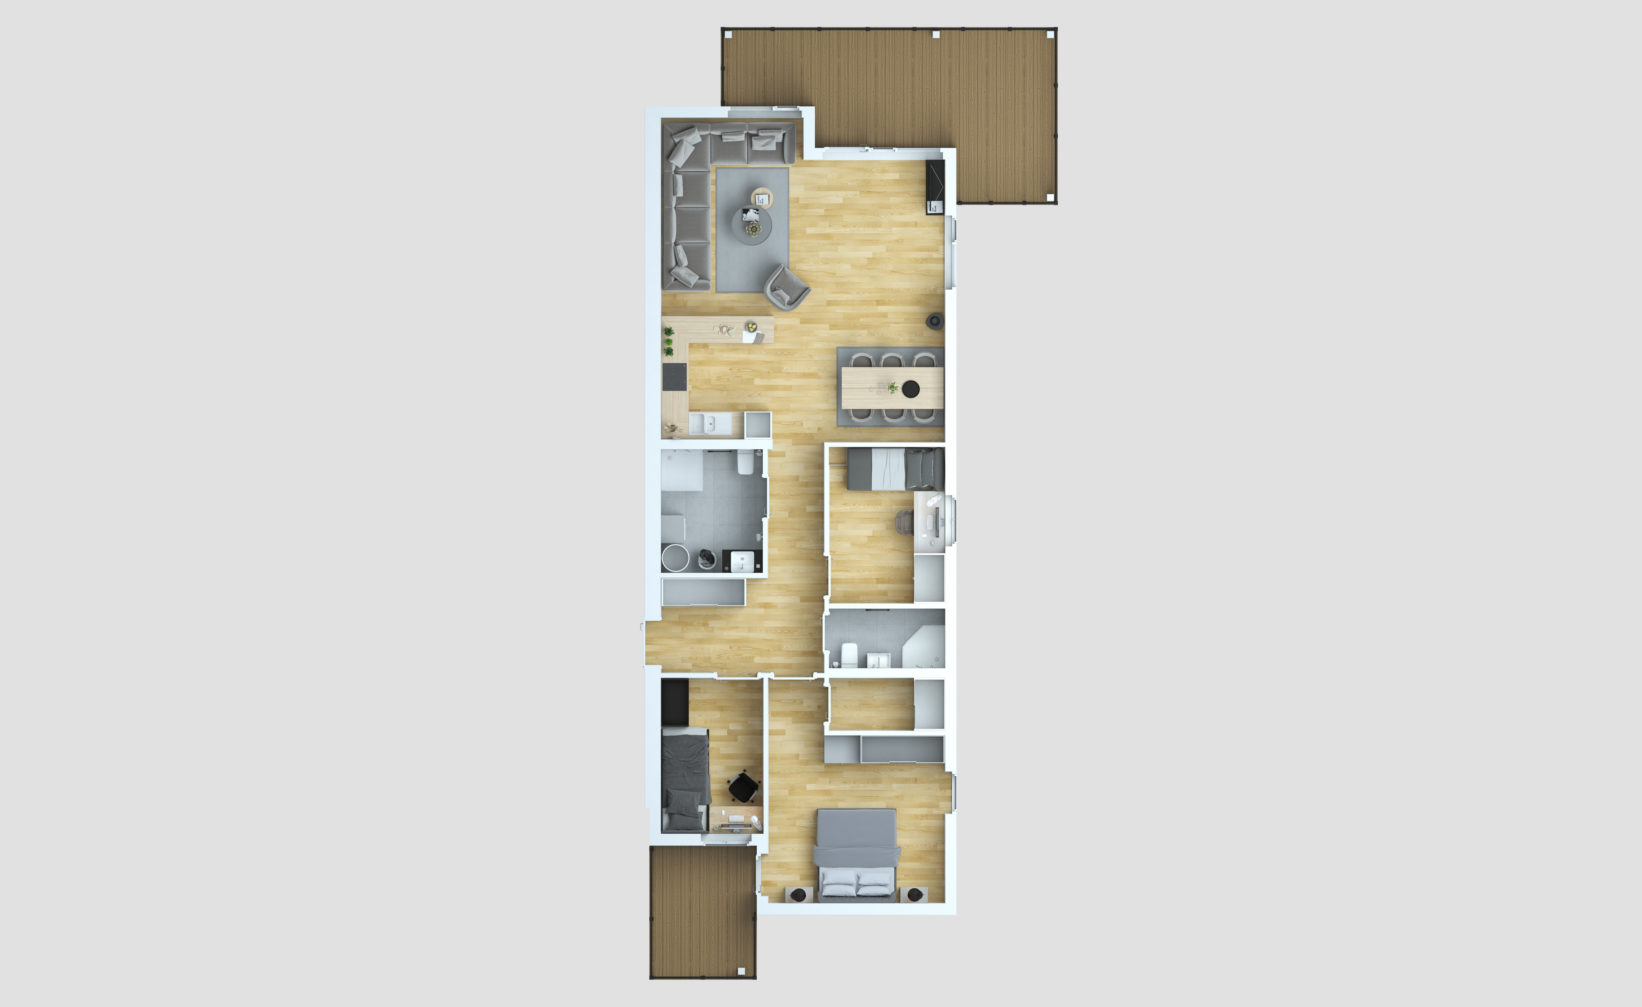 En planløsning av en to-roms leilighet laget for visualisering og salgsformål i 2016 for klient Opthimal.